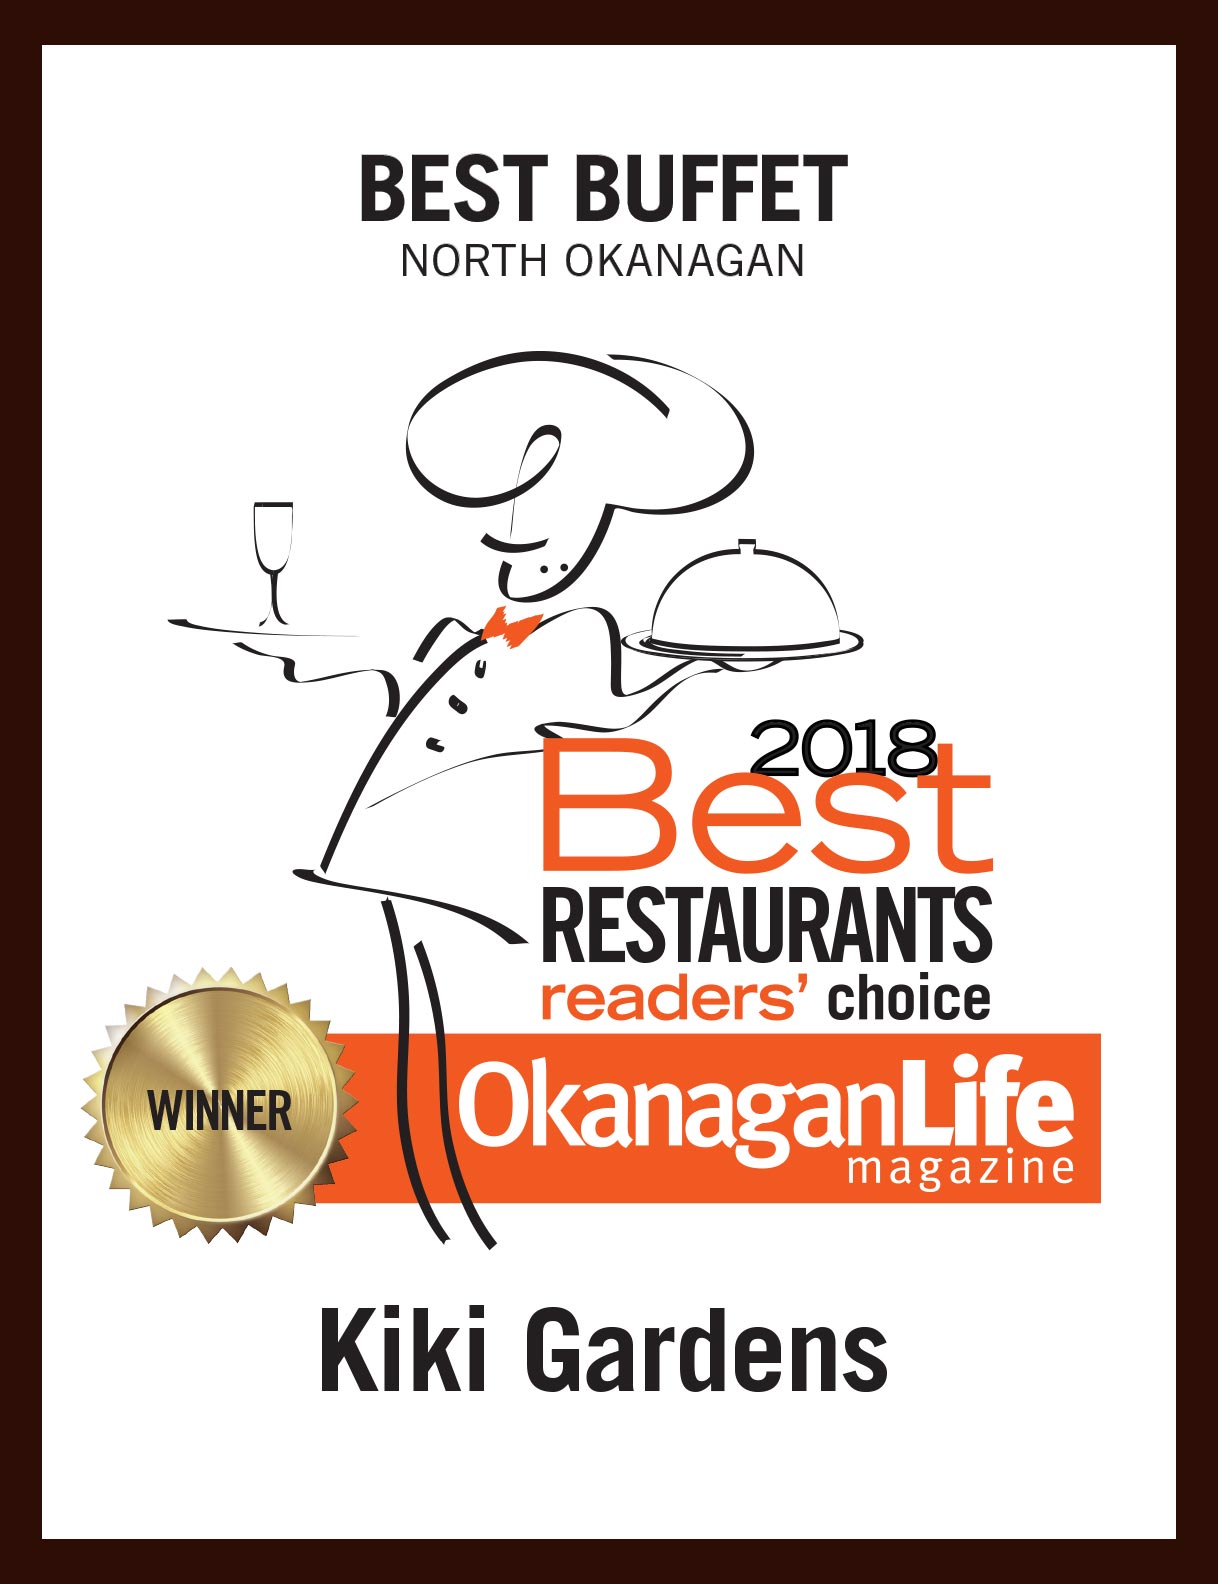 Best Restaurants of the Okanagan - 2018 Best Buffet in the North Okanagan